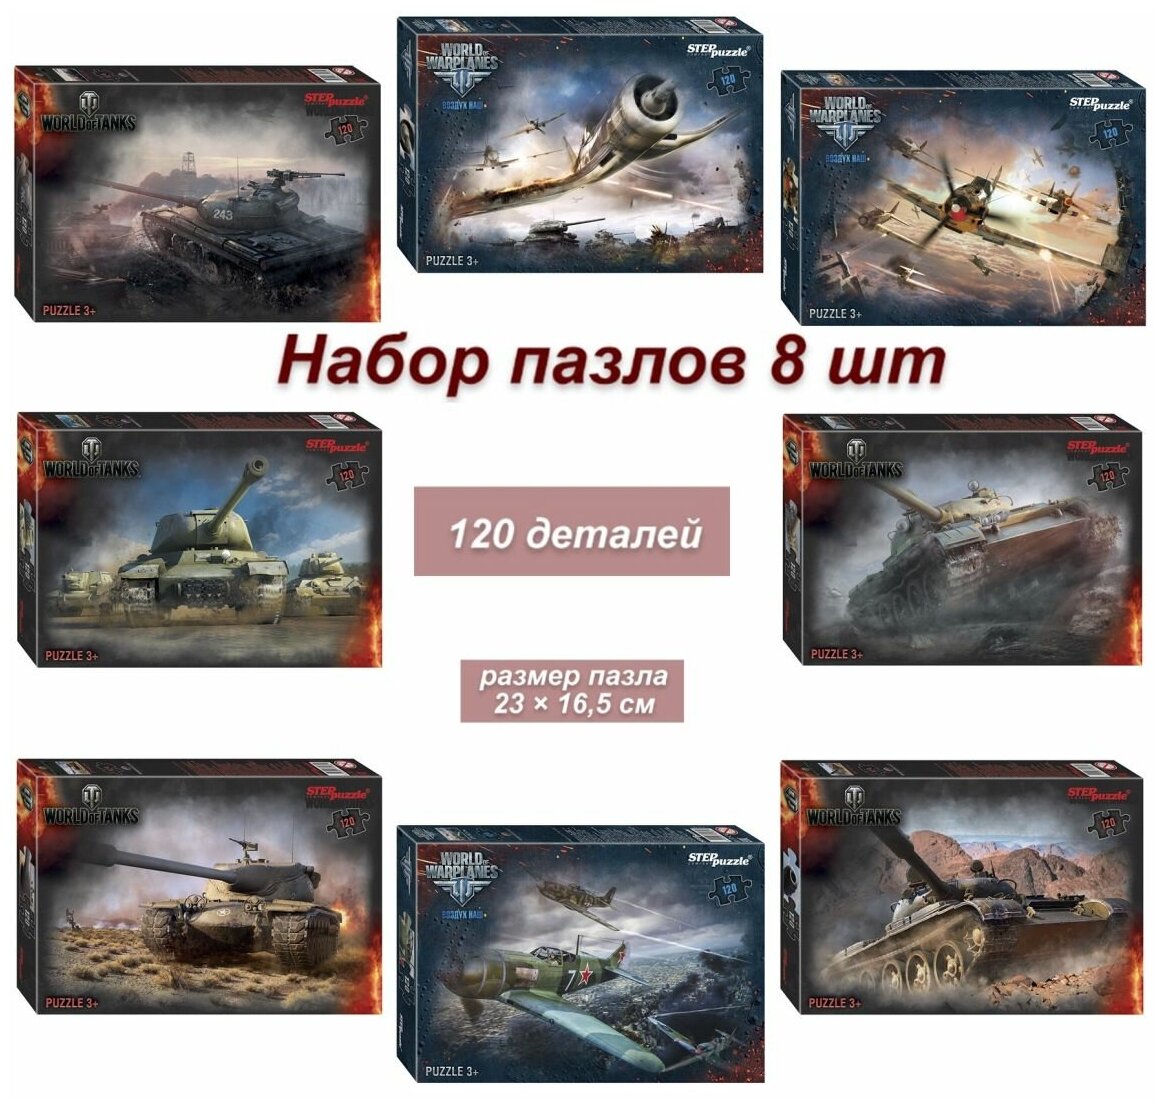 Набор 8 пазлов по 120 деталей: World of Tanks